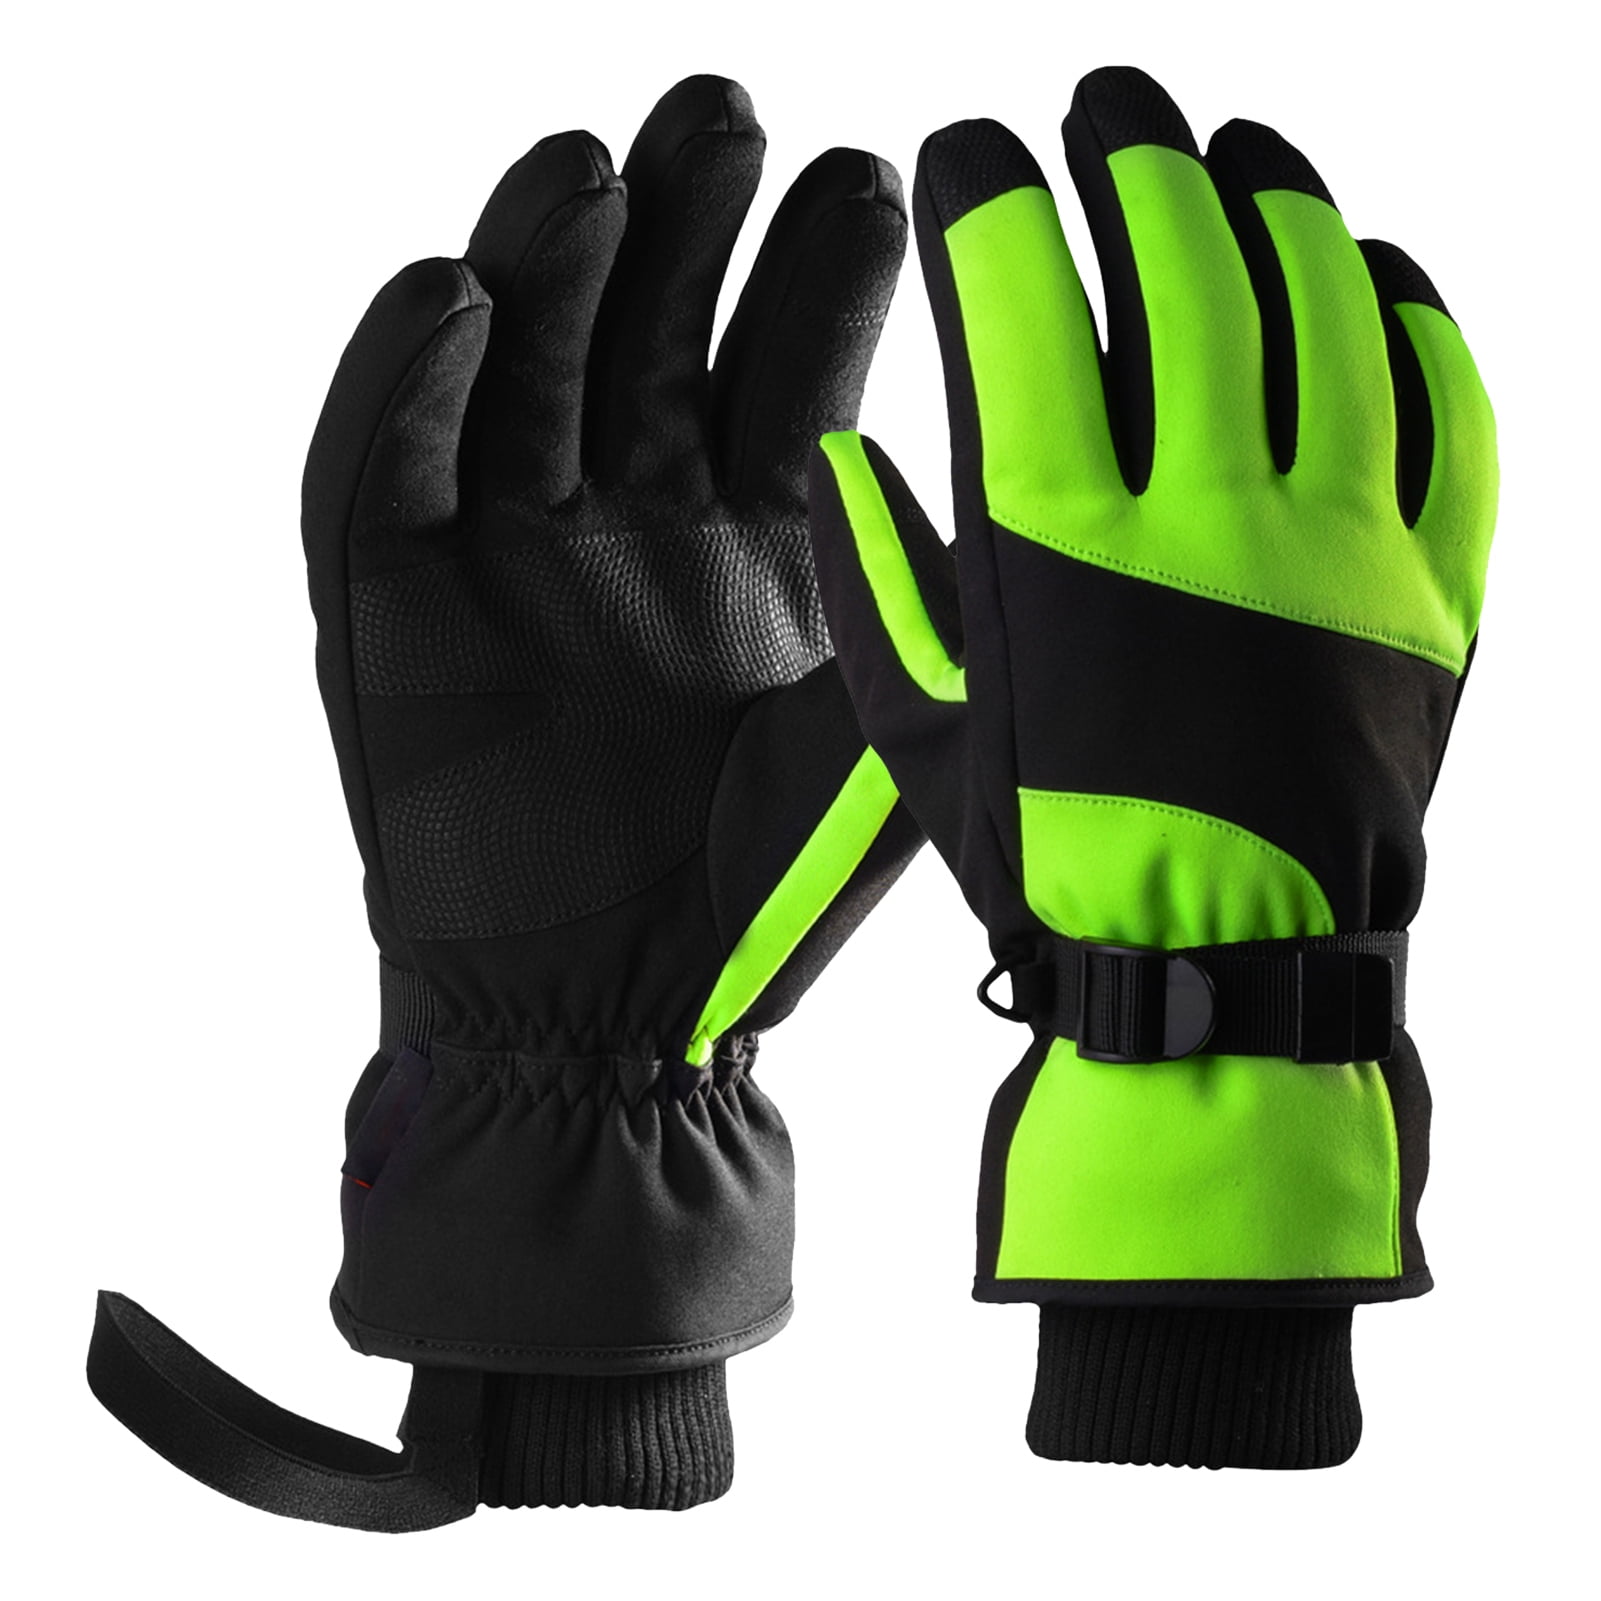 Details about   Winter Warm Ski Gloves Men Women Outdoor Snowboarding Sports Gloves Red Newest 